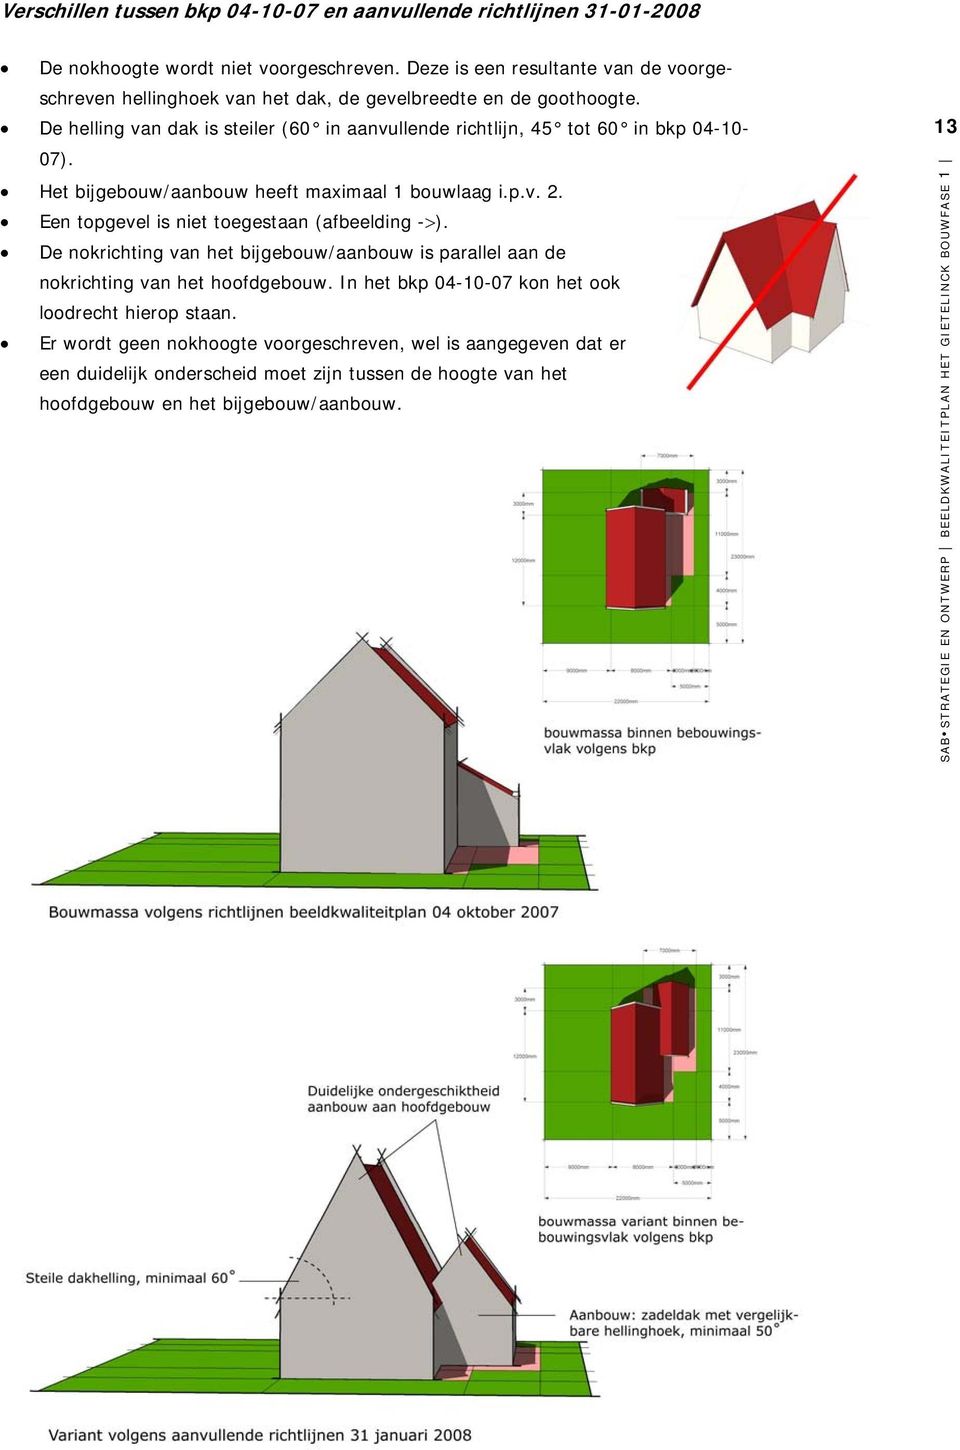 De helling van dak is steiler (60 in aanvullende richtlijn, 45 tot 60 in bkp 04-10- 07). Het bijgebouw/aanbouw heeft maximaal 1 bouwlaag i.p.v. 2.